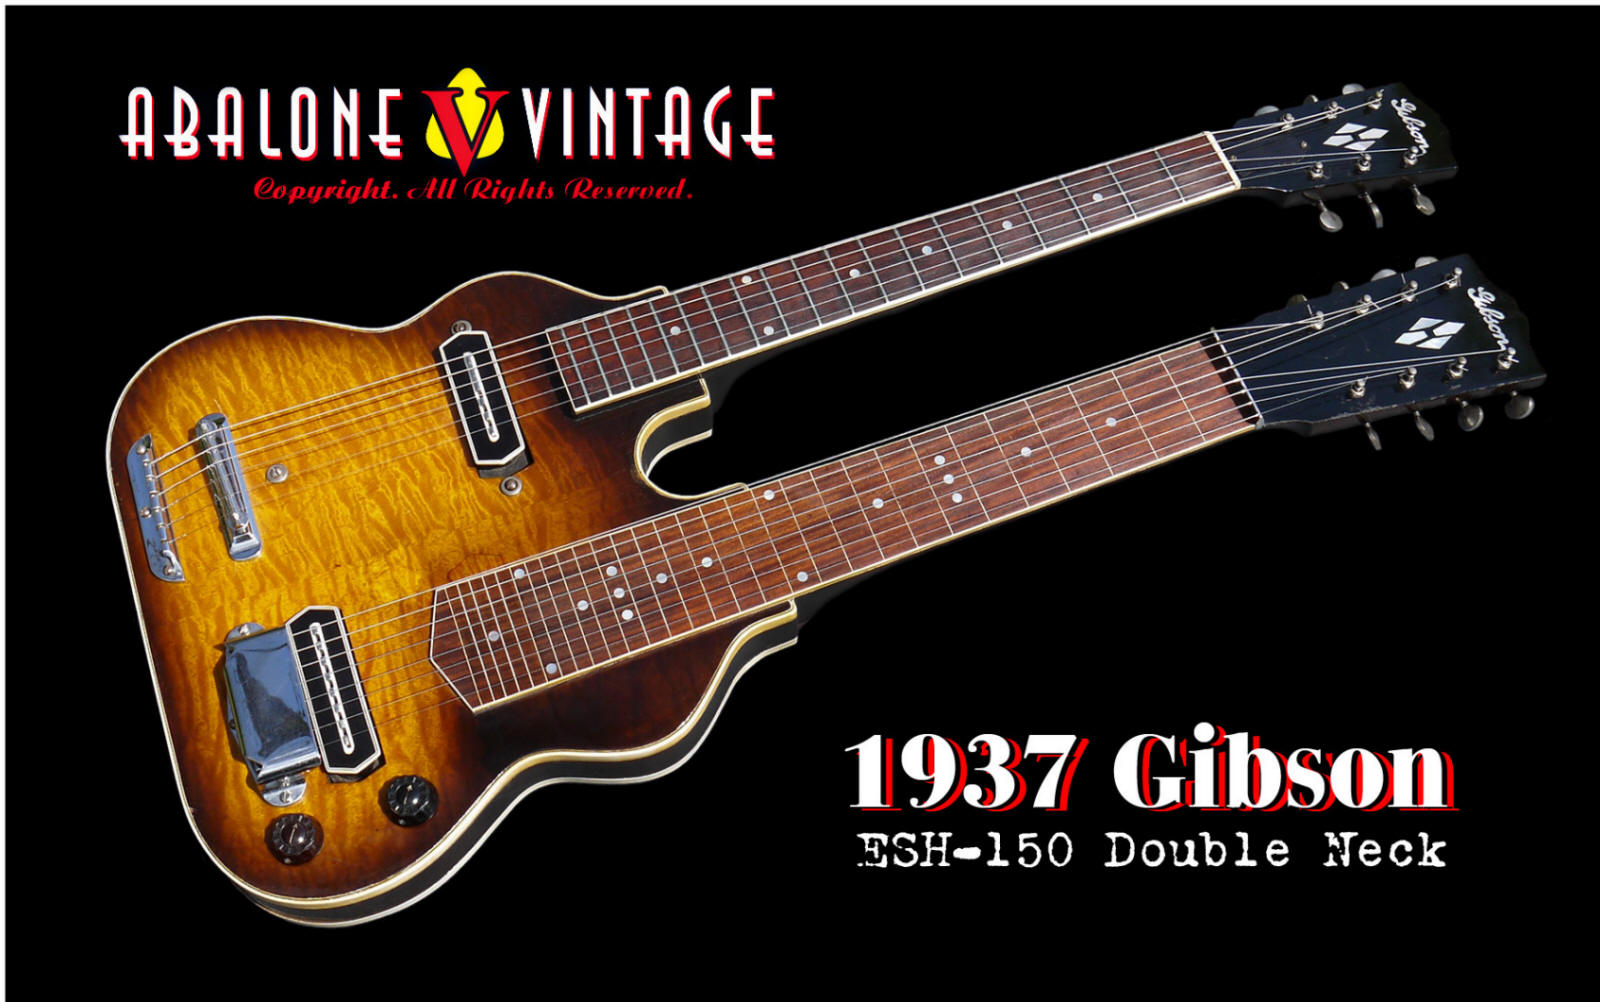 1937 Gibson ESH-150 double neck guitar 1938 Pre-war